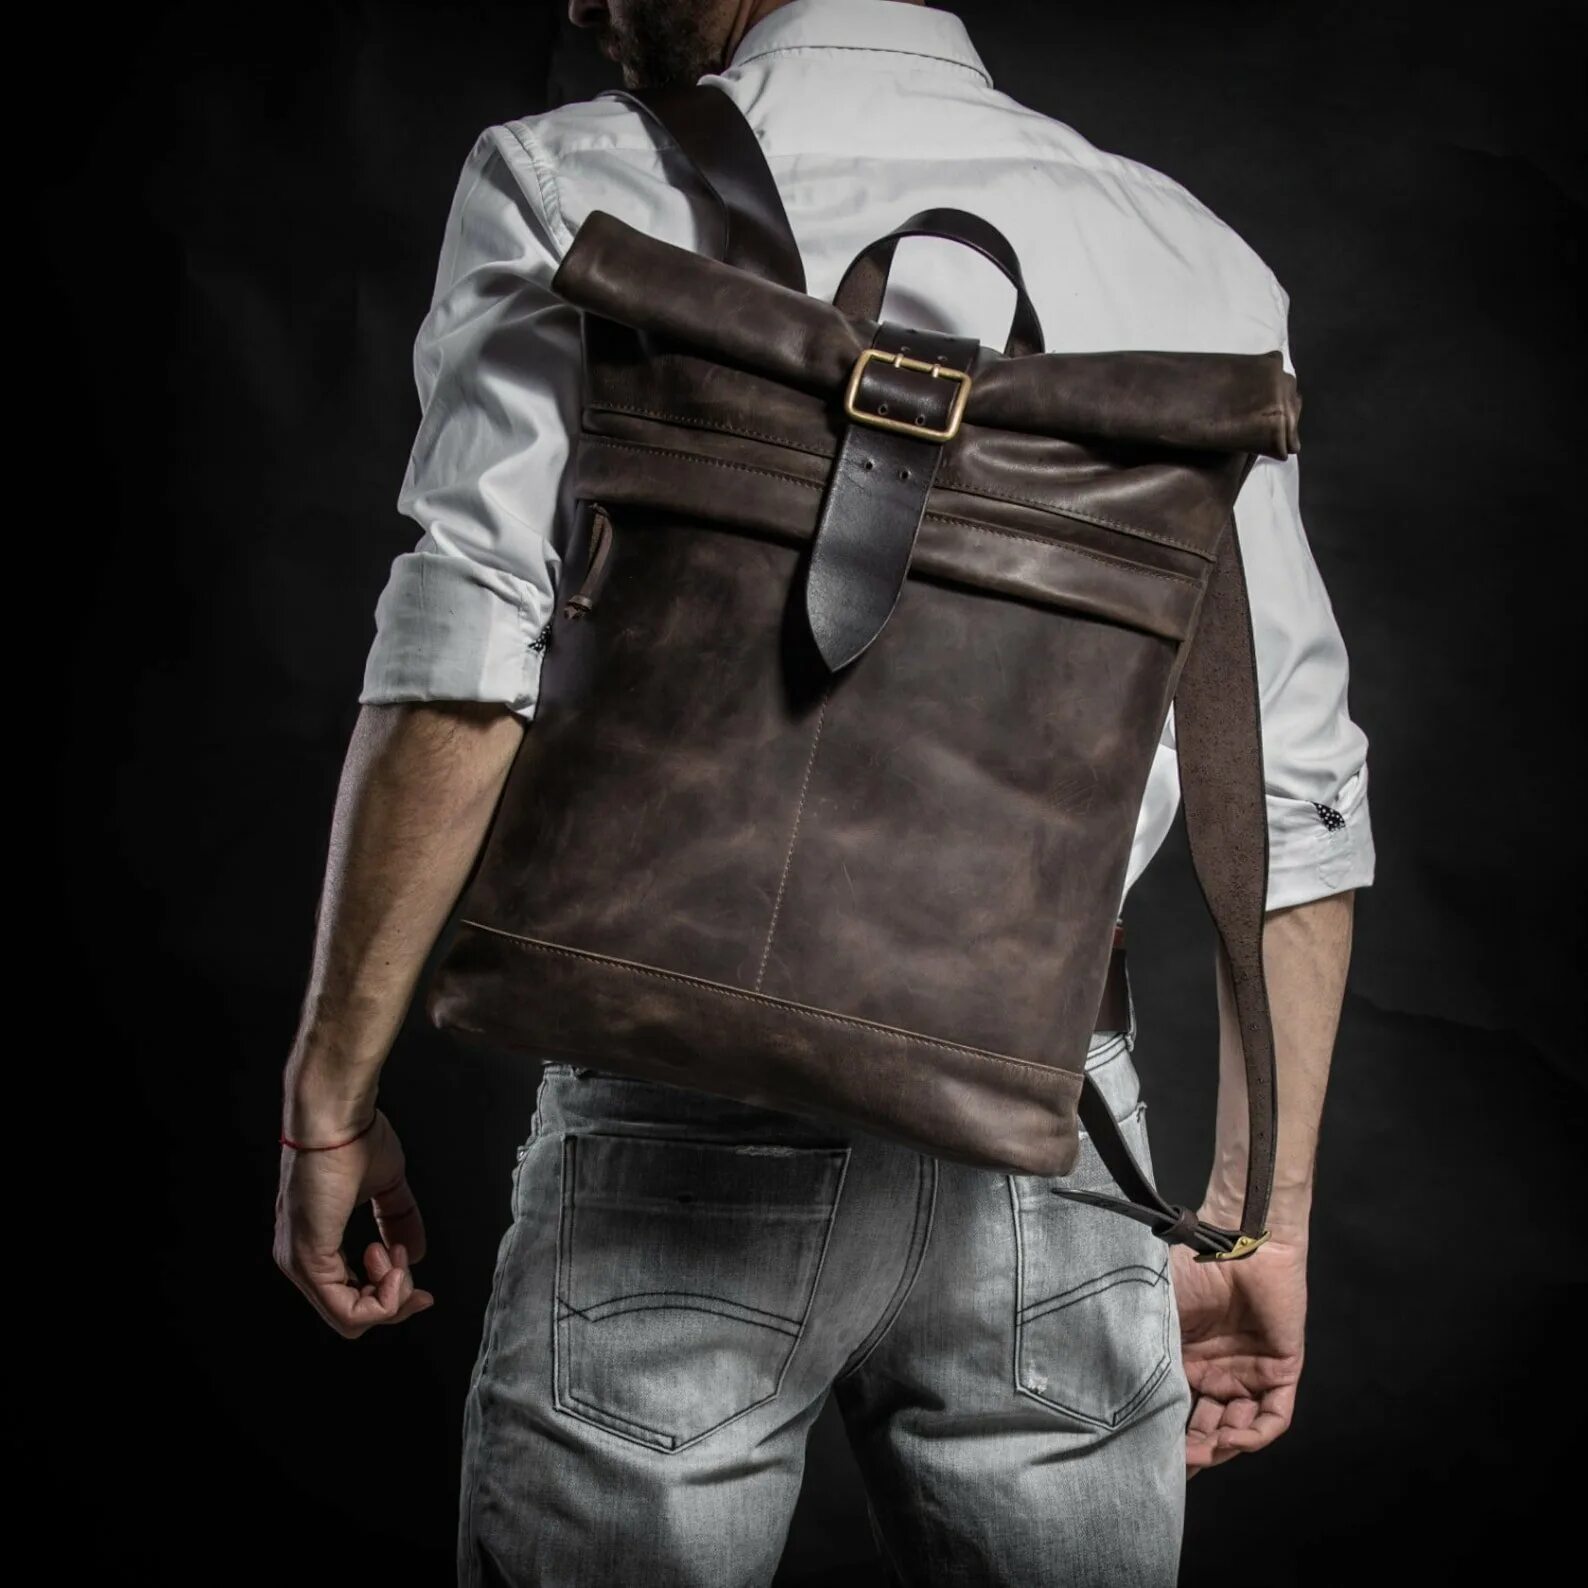 Kruk Garage сумка мужская. Кожаный рюкзак Rolltop. Стильный мужской рюкзак. Рюкзак кожаный мужской. Рюкзак мужской бренд